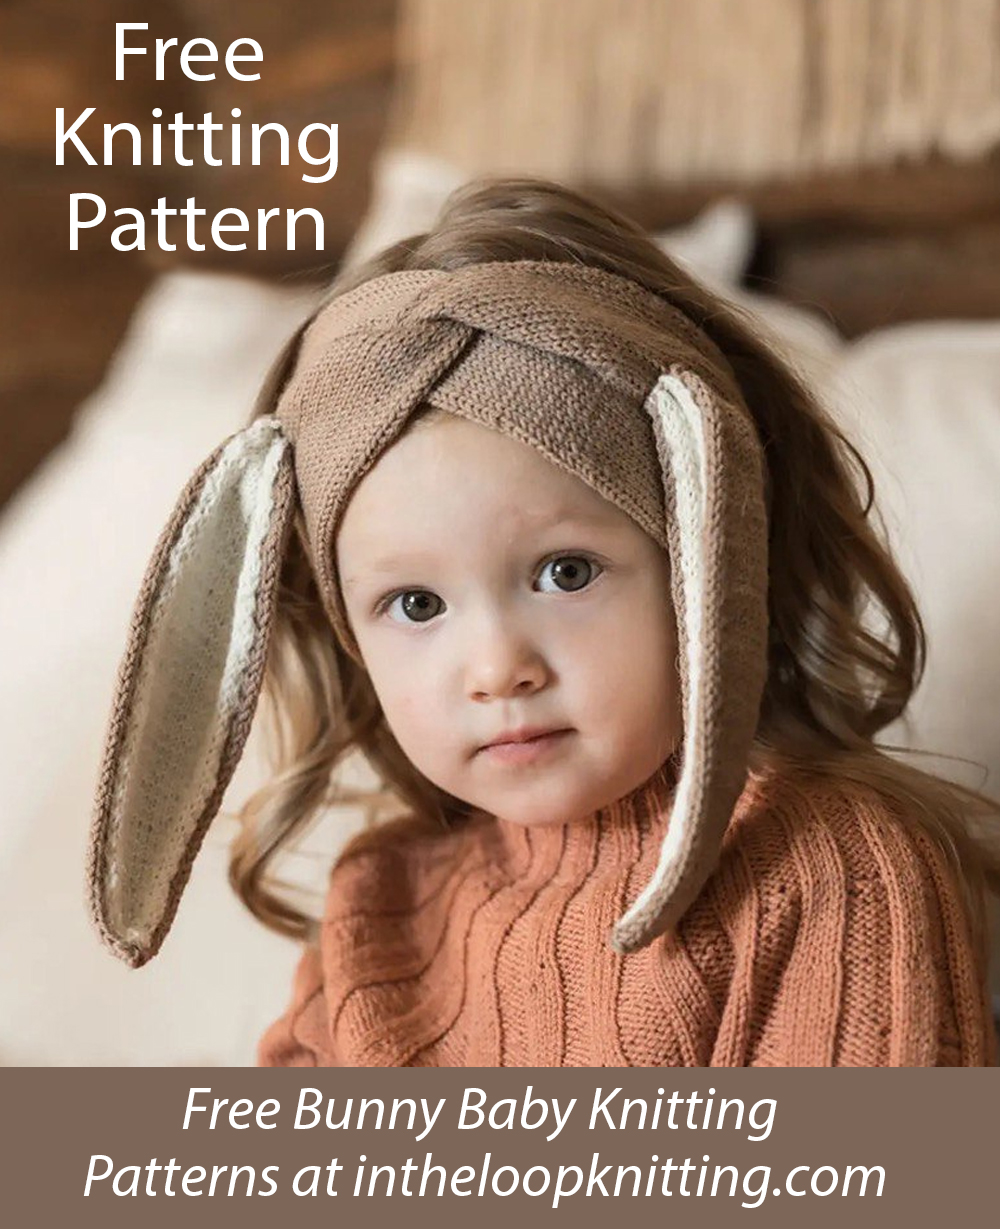 Free Bunny CHeadband knitting pattern